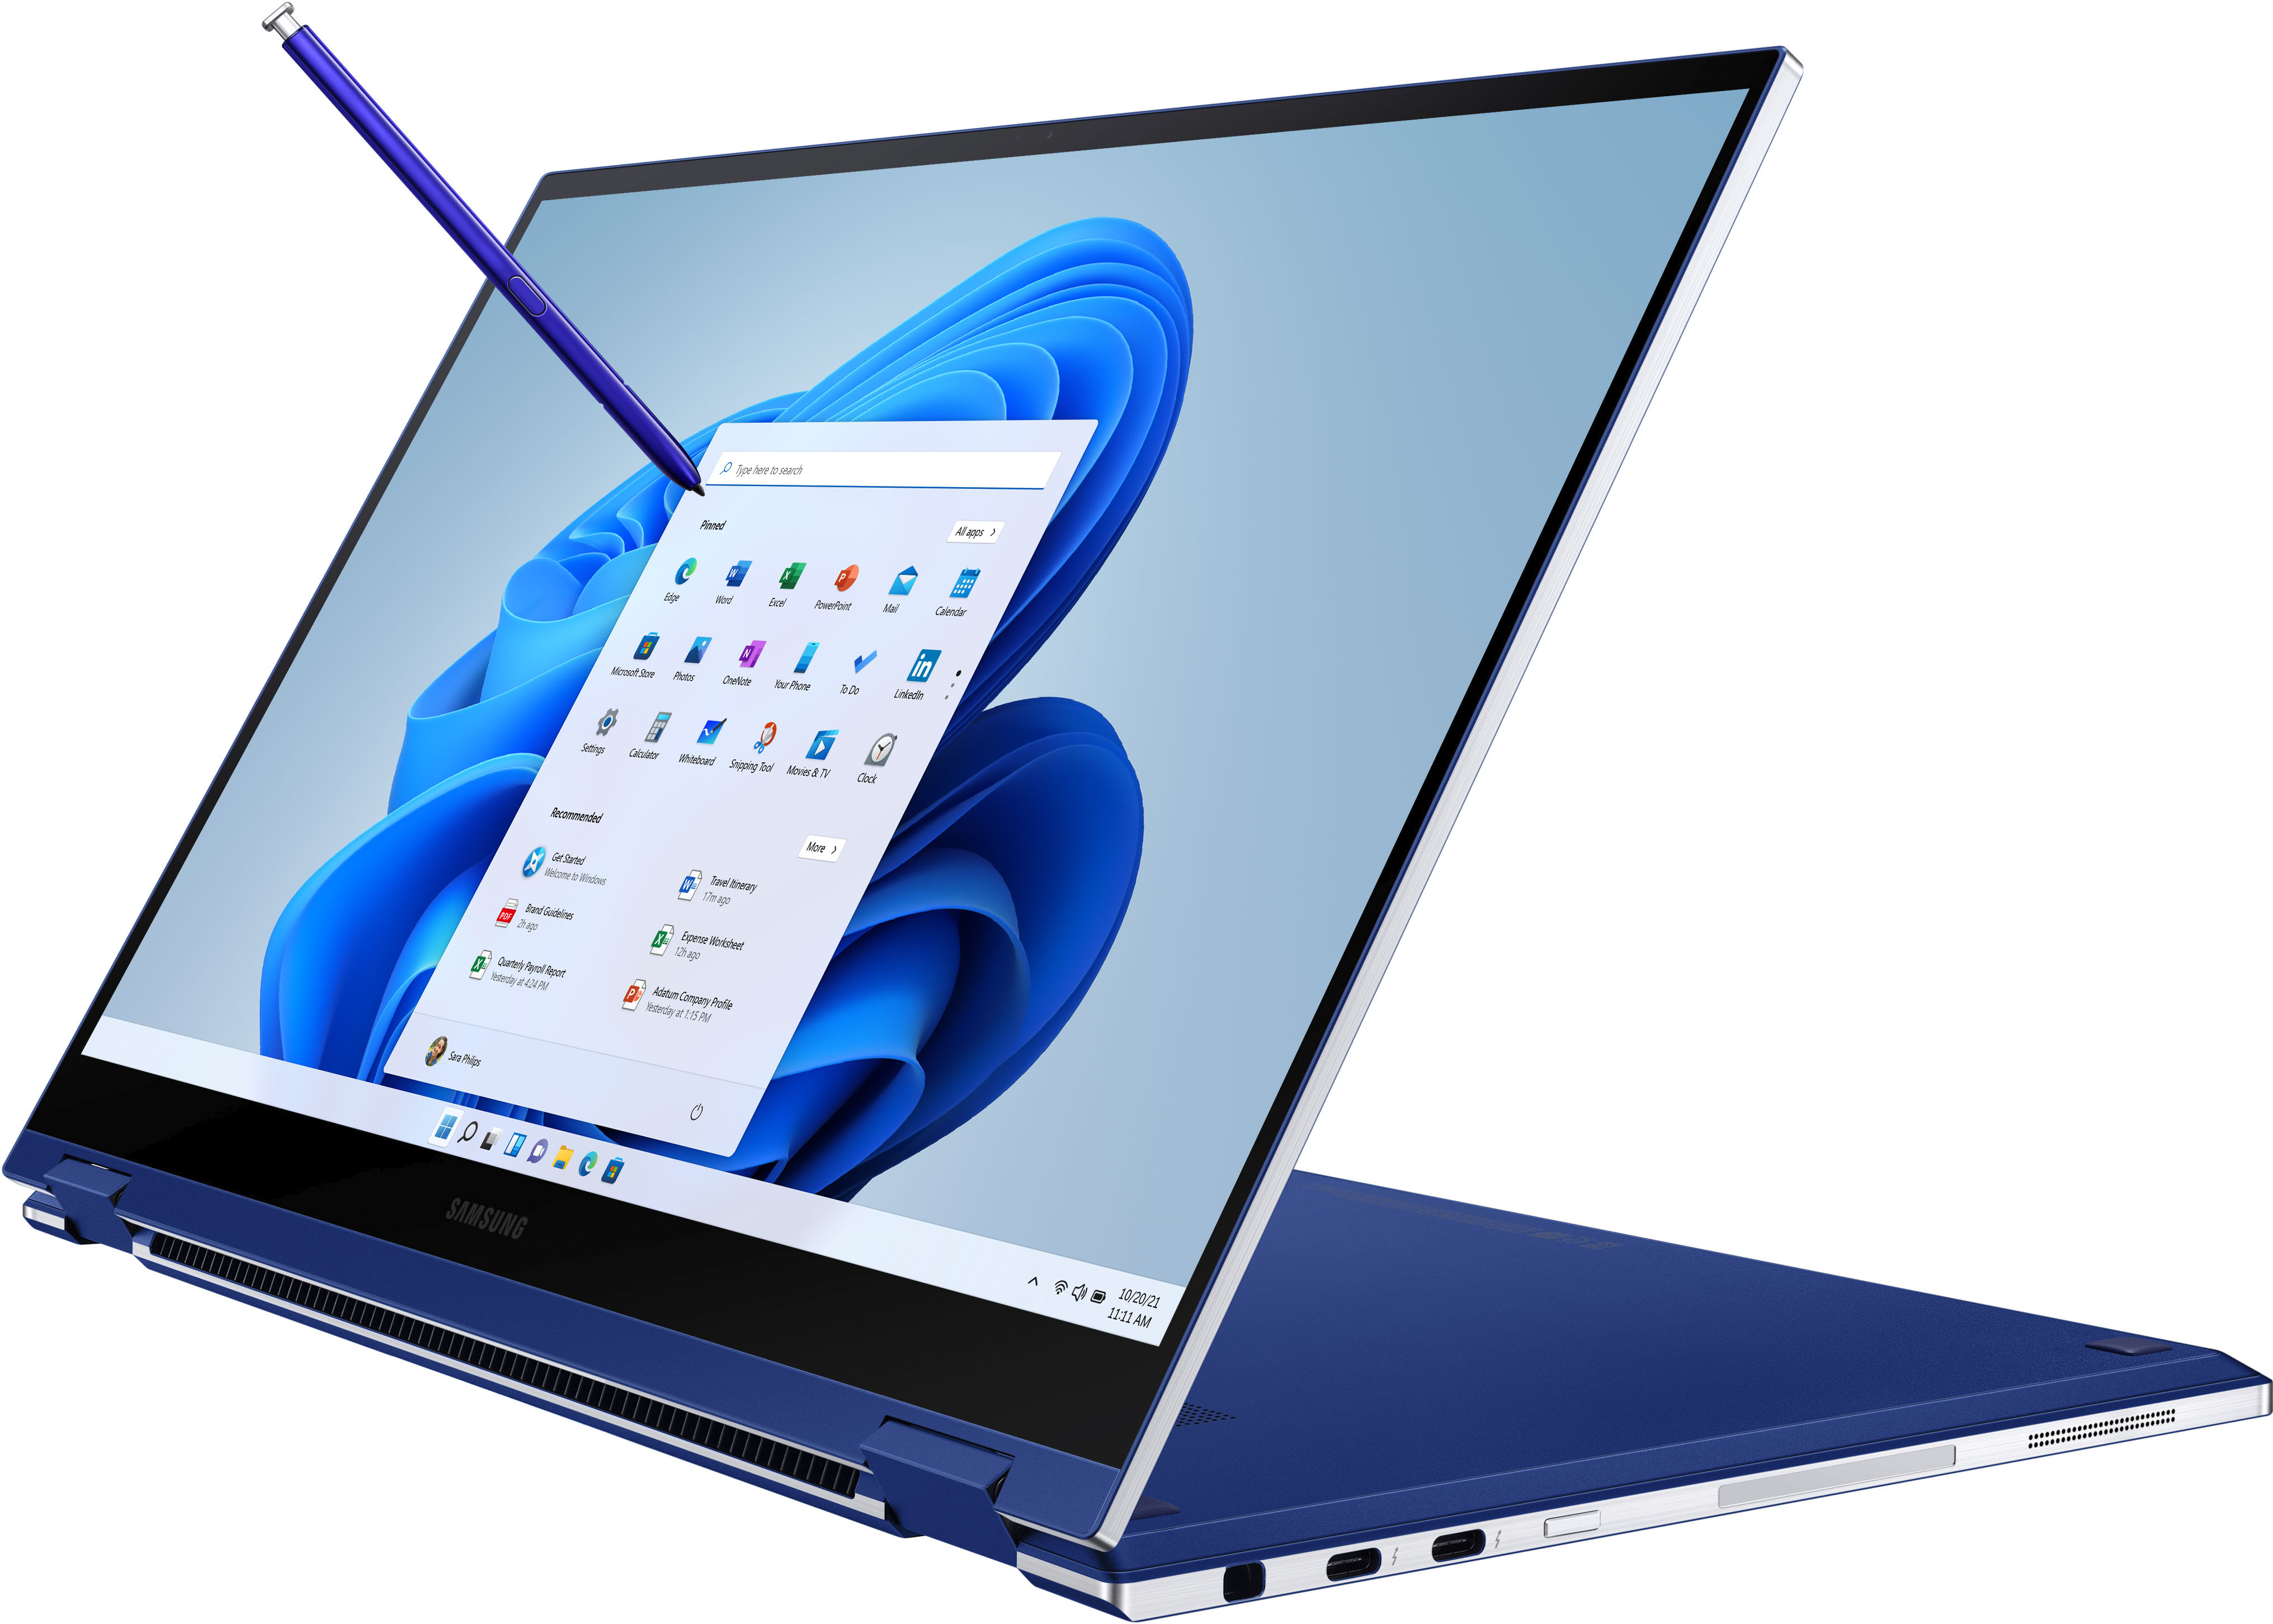 Samsung Galaxy Book Flex sẽ đem đến cho bạn trải nghiệm máy tính cảm ứng tiên tiến nhất với màn hình viền mỏng, bảo mật vân tay, bút S Pen tiện lợi và nhiều tính năng thông minh khác. Hãy xem hình ảnh để hiểu rõ hơn về sản phẩm này.